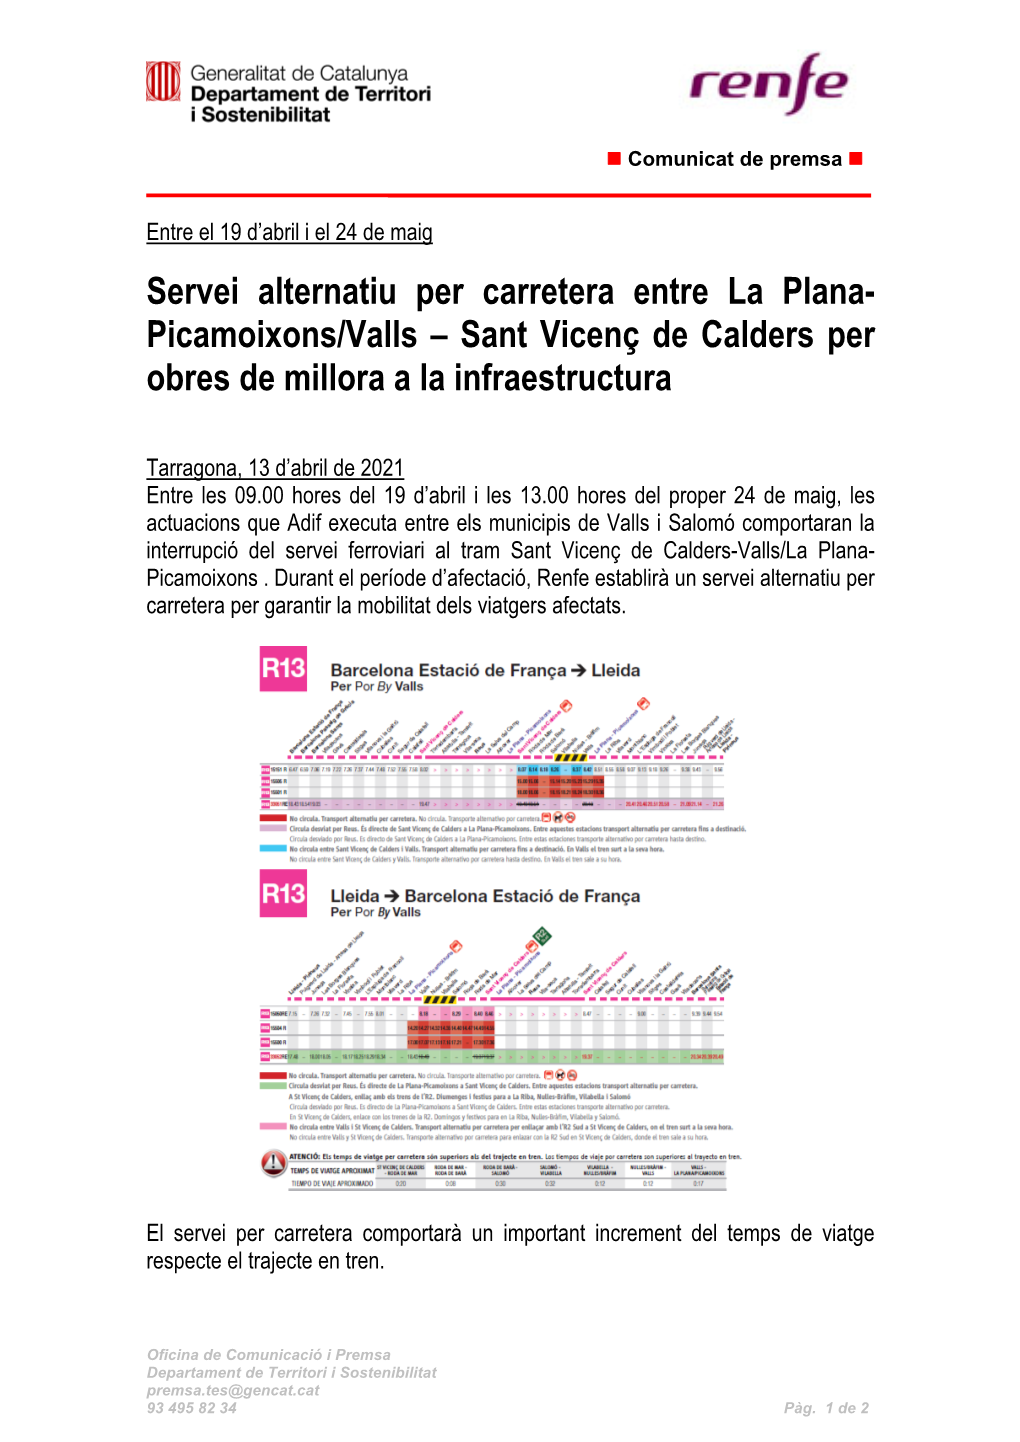 Servei Alternatiu Per Carretera Entre La Plana- Picamoixons/Valls – Sant Vicenç De Calders Per Obres De Millora a La Infraestructura